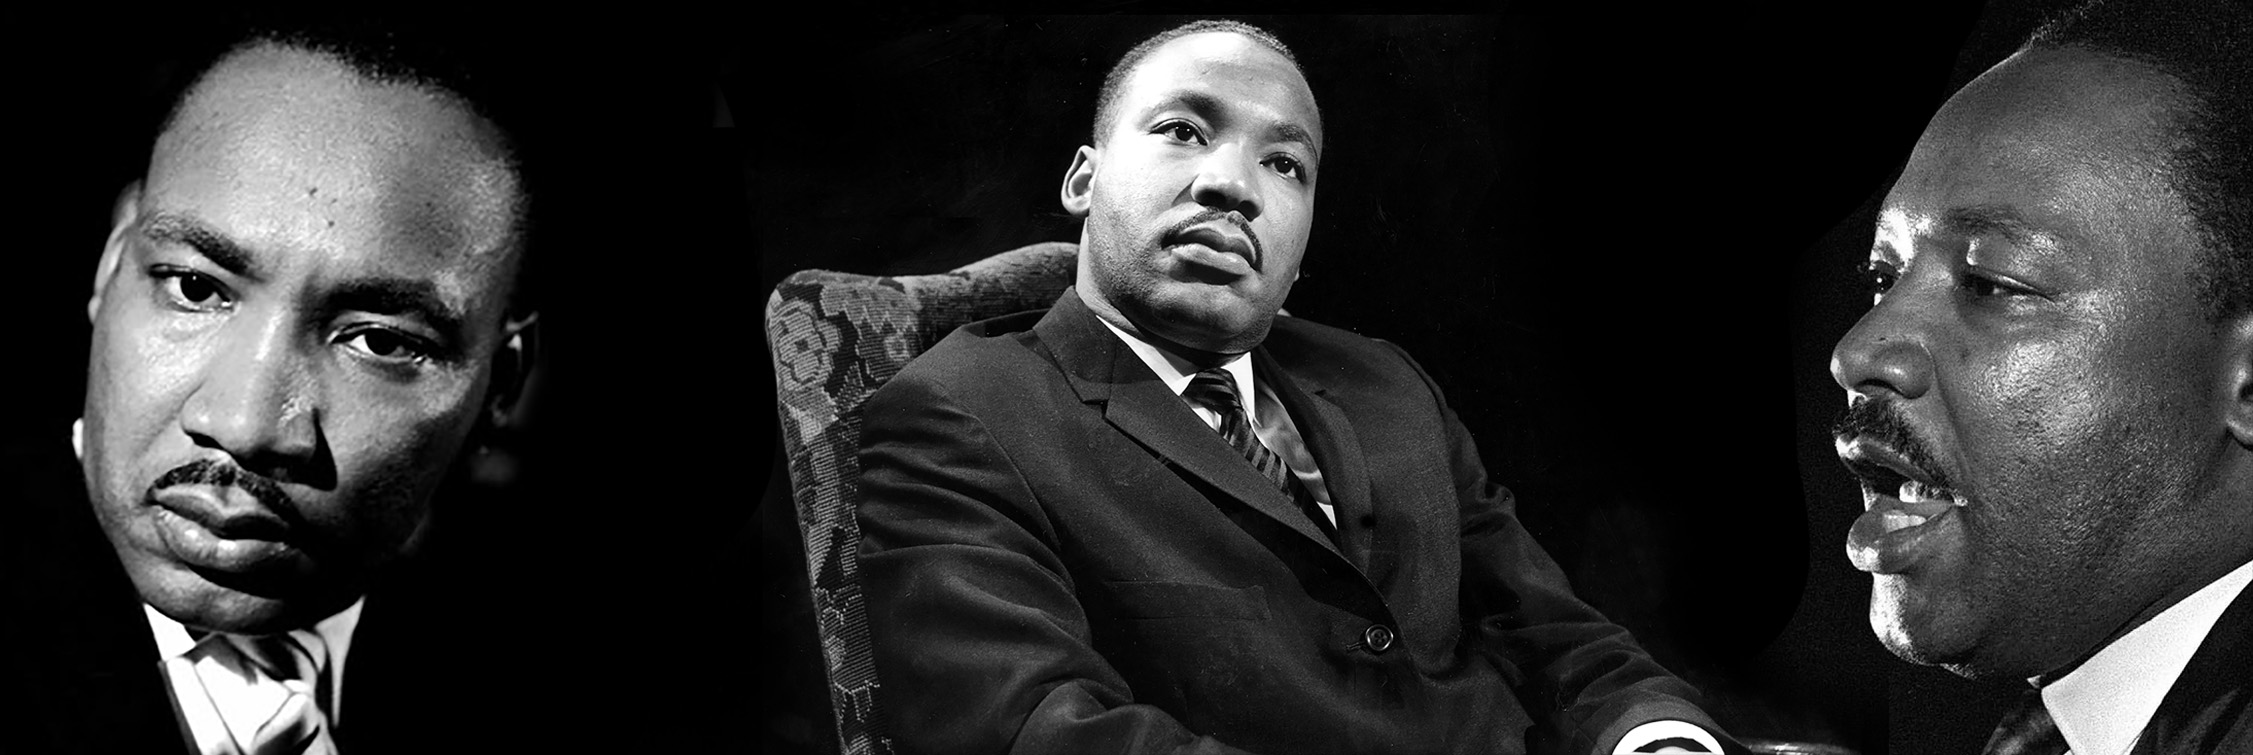 Discurso de Martin Luther King: "Soy un inadaptado y estoy orgulloso"